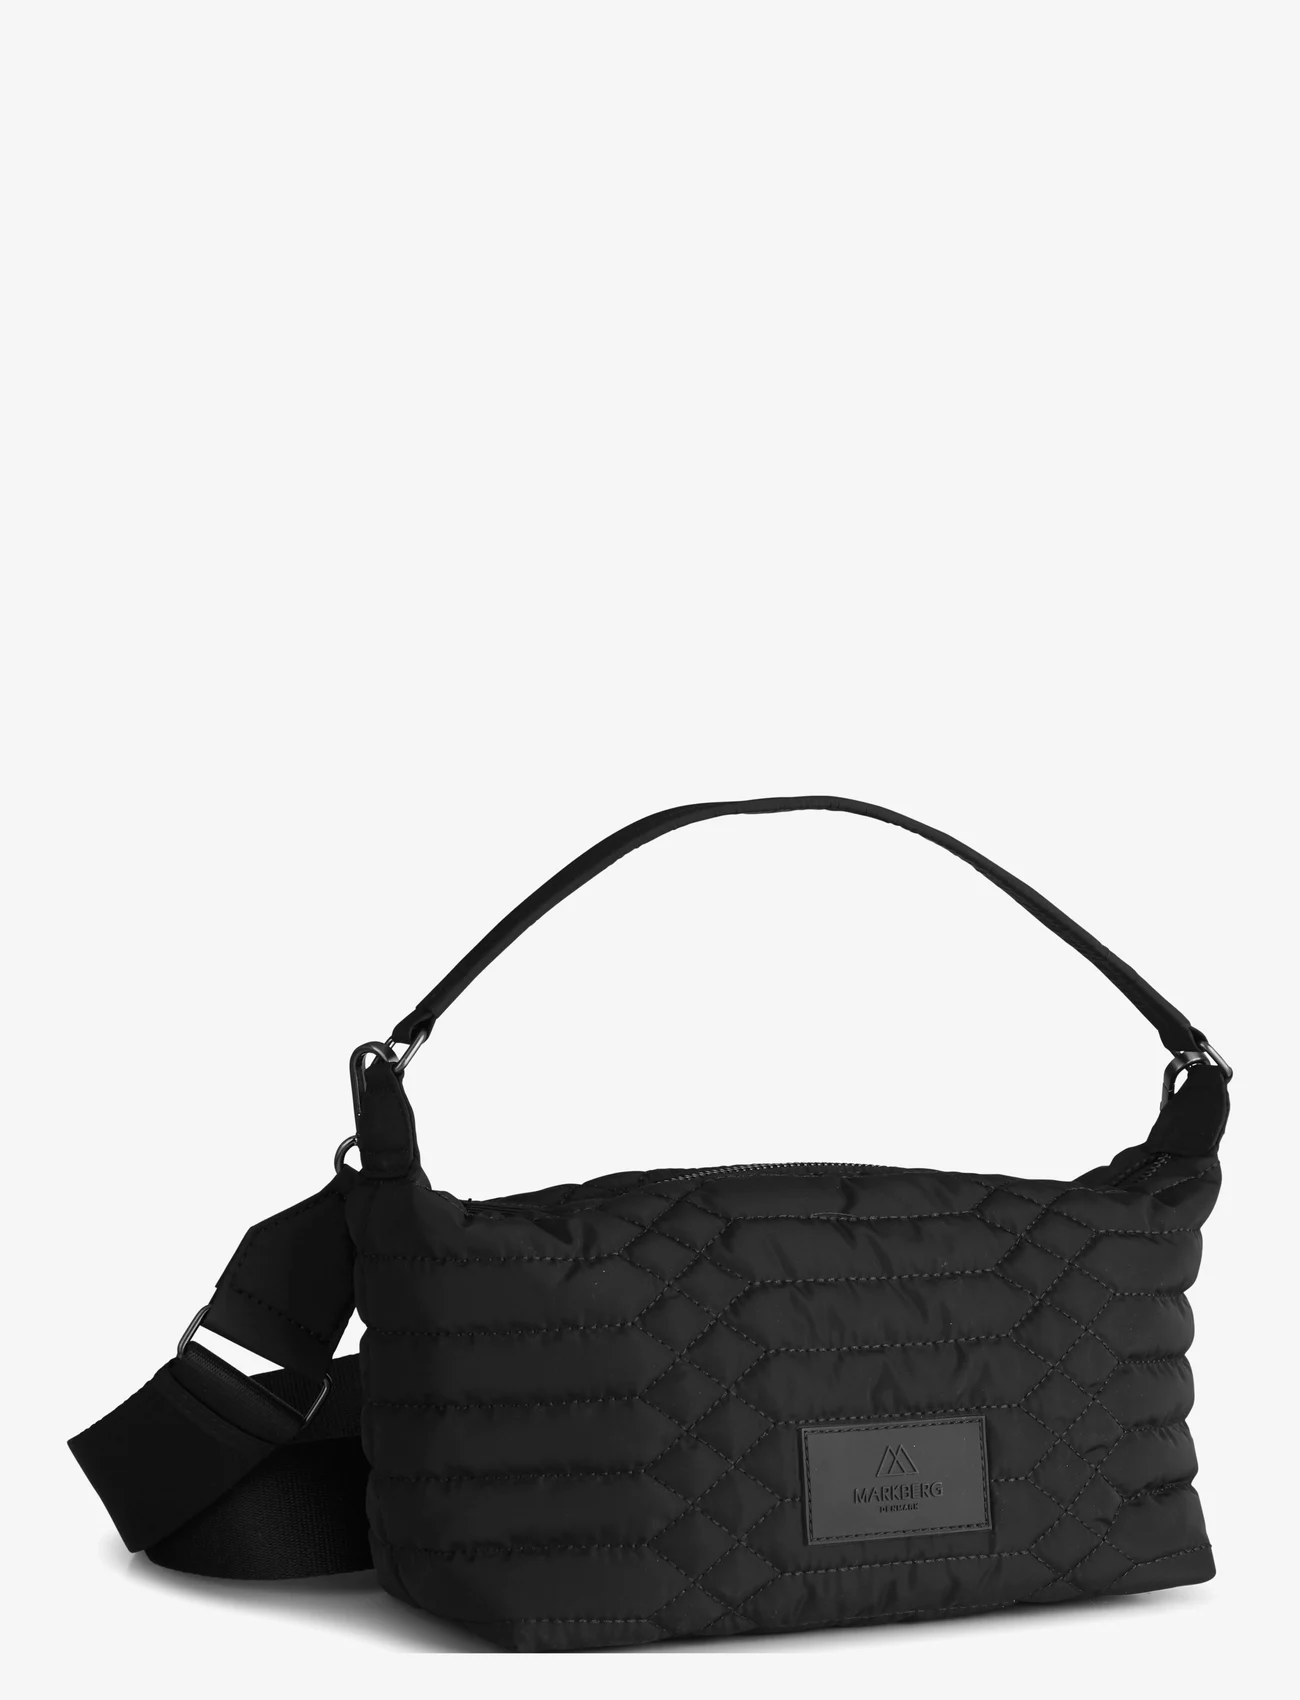 Markberg - LotusMBG Bag, Snake Quilt - festtøj til outletpriser - black w/black - 1